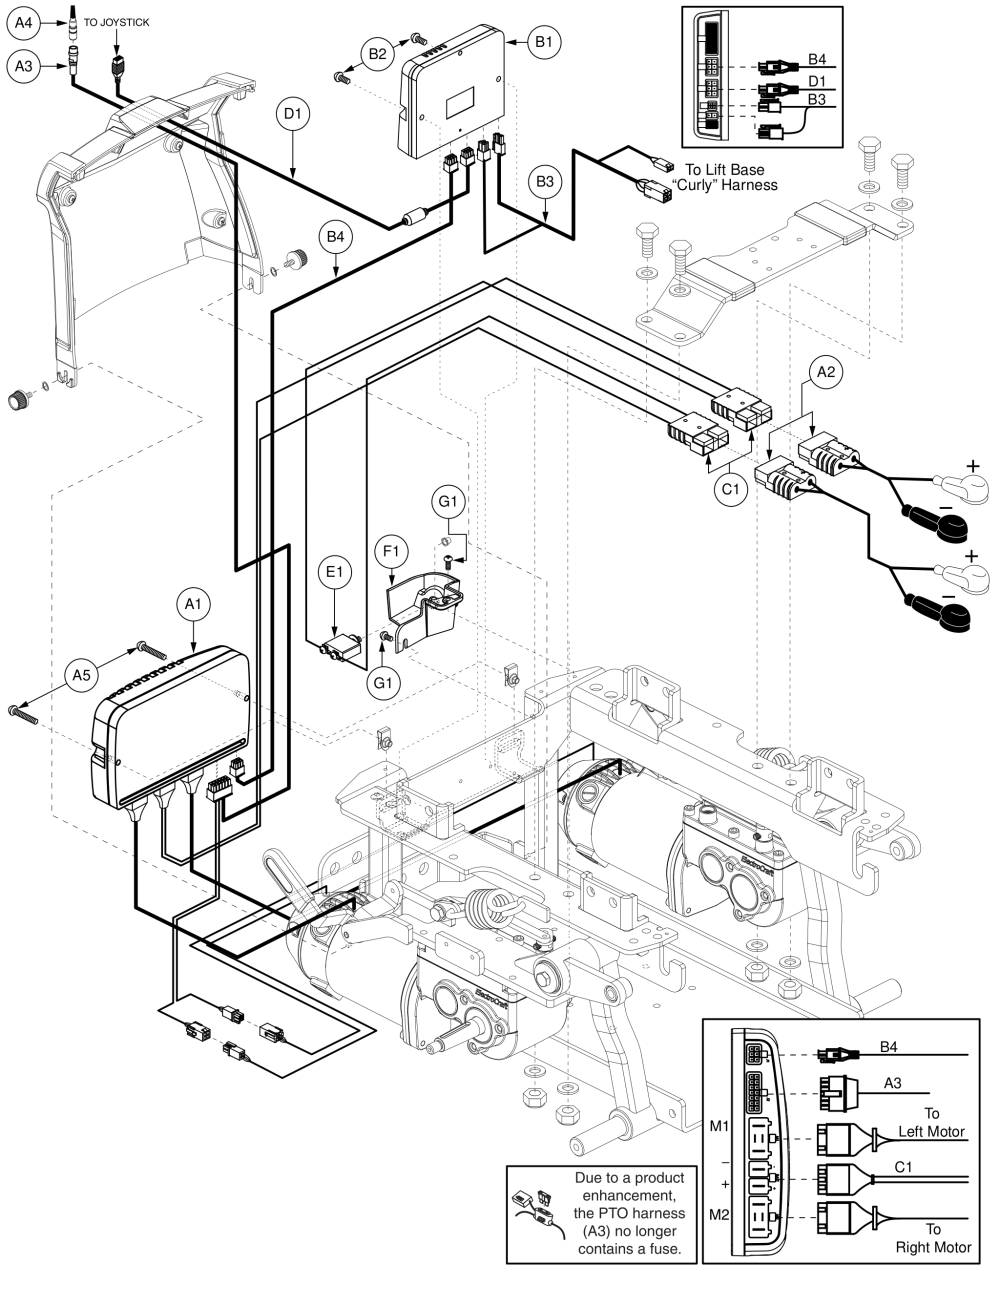 Q-logic Electronics - Q6 Edge, Tb3 Lift Only, Accu-trac Motors, Am1 (config# 04) parts diagram